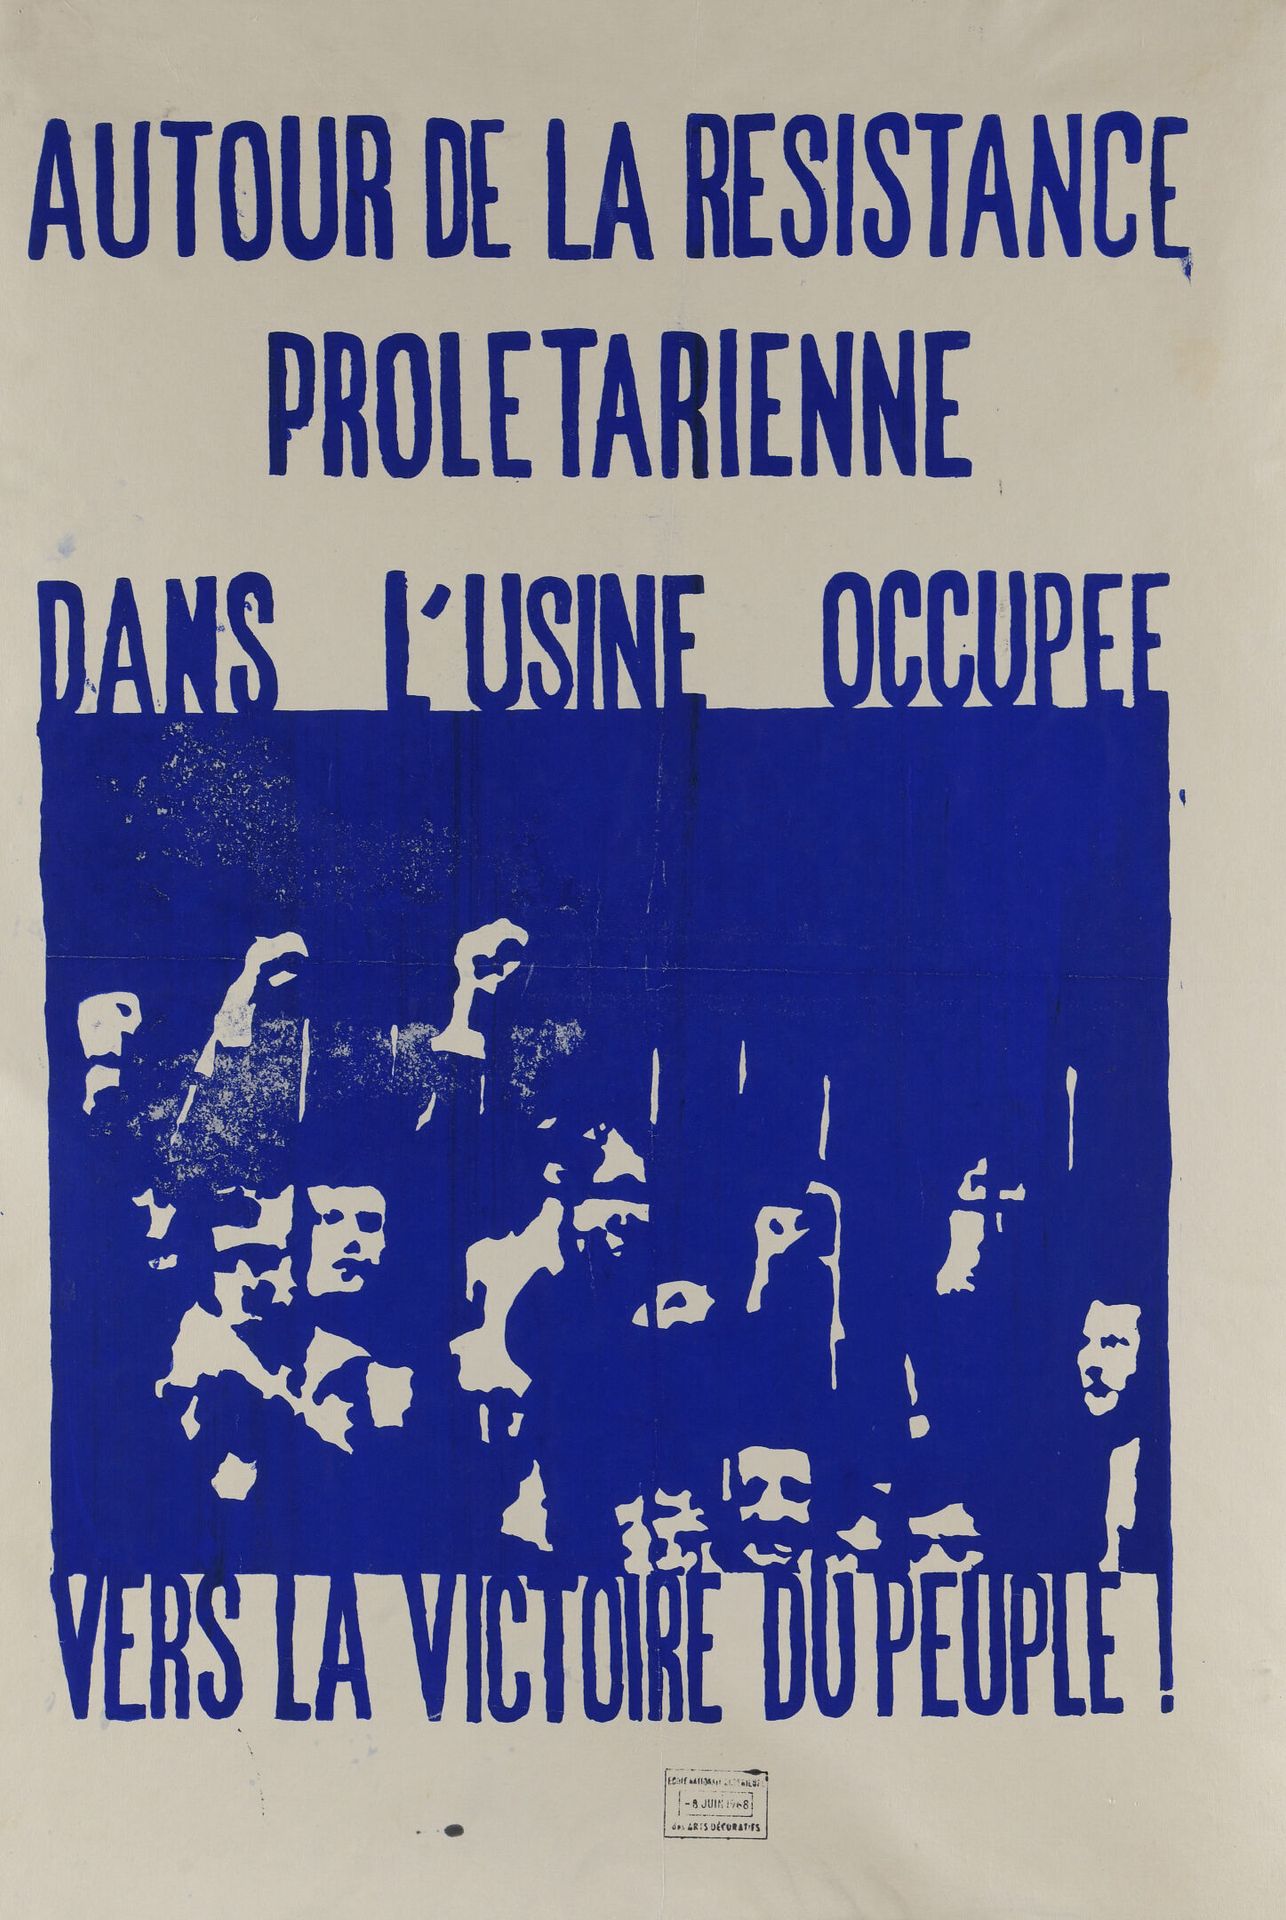 Null [1968年5月的海报]

装饰艺术学校

围绕着被占领的工厂里的无产阶级抵抗，走向人民的胜利!

蓝色丝网印刷，学校的湿印，日期为1968年6月8日&hellip;